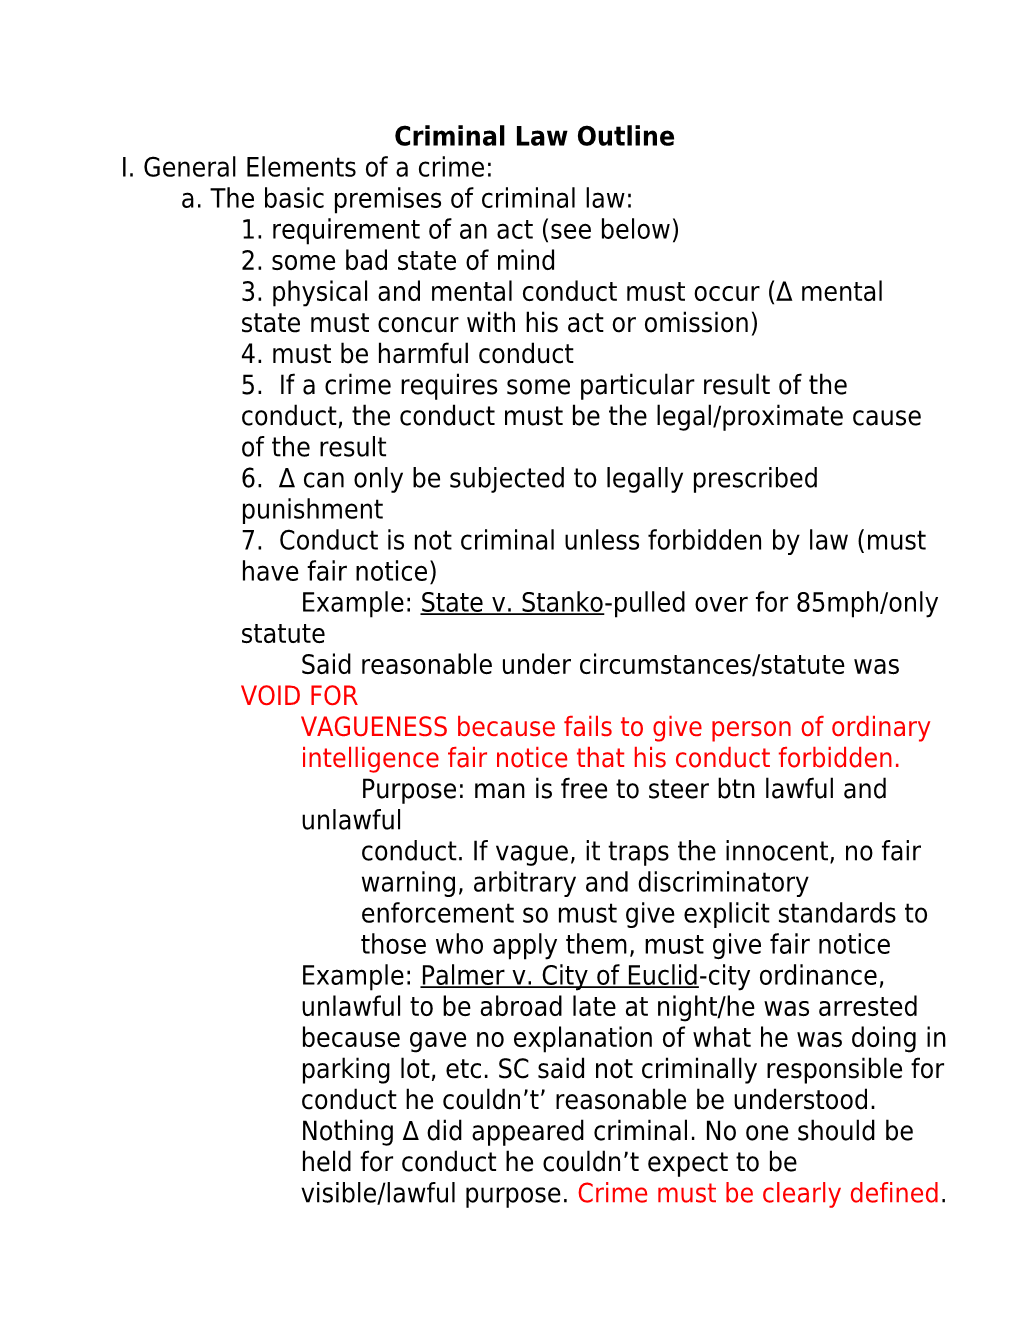 Criminal Law Outline s3